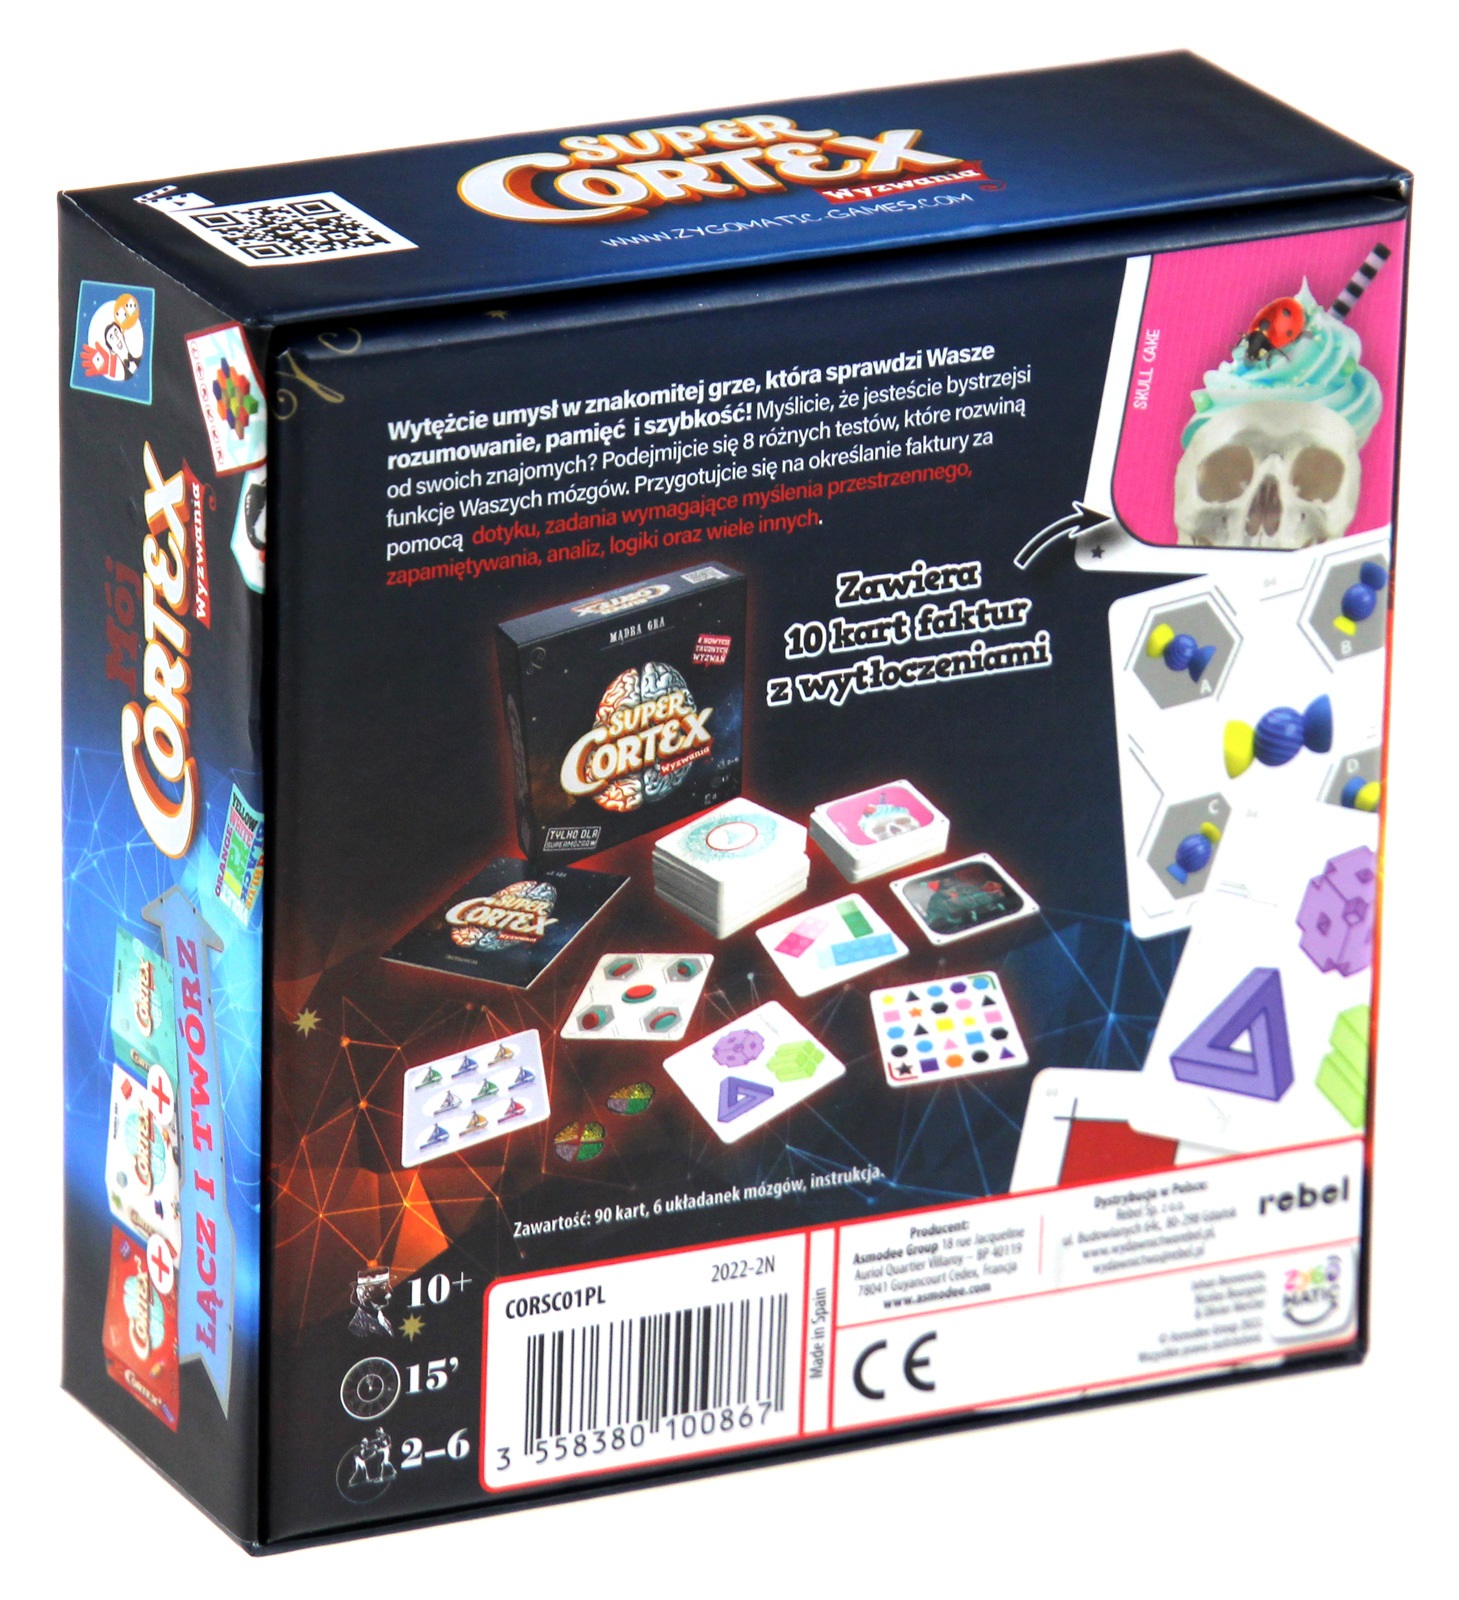 Cortex Super Mądra gra Wyzwania Rebel 00867 gra planszowa